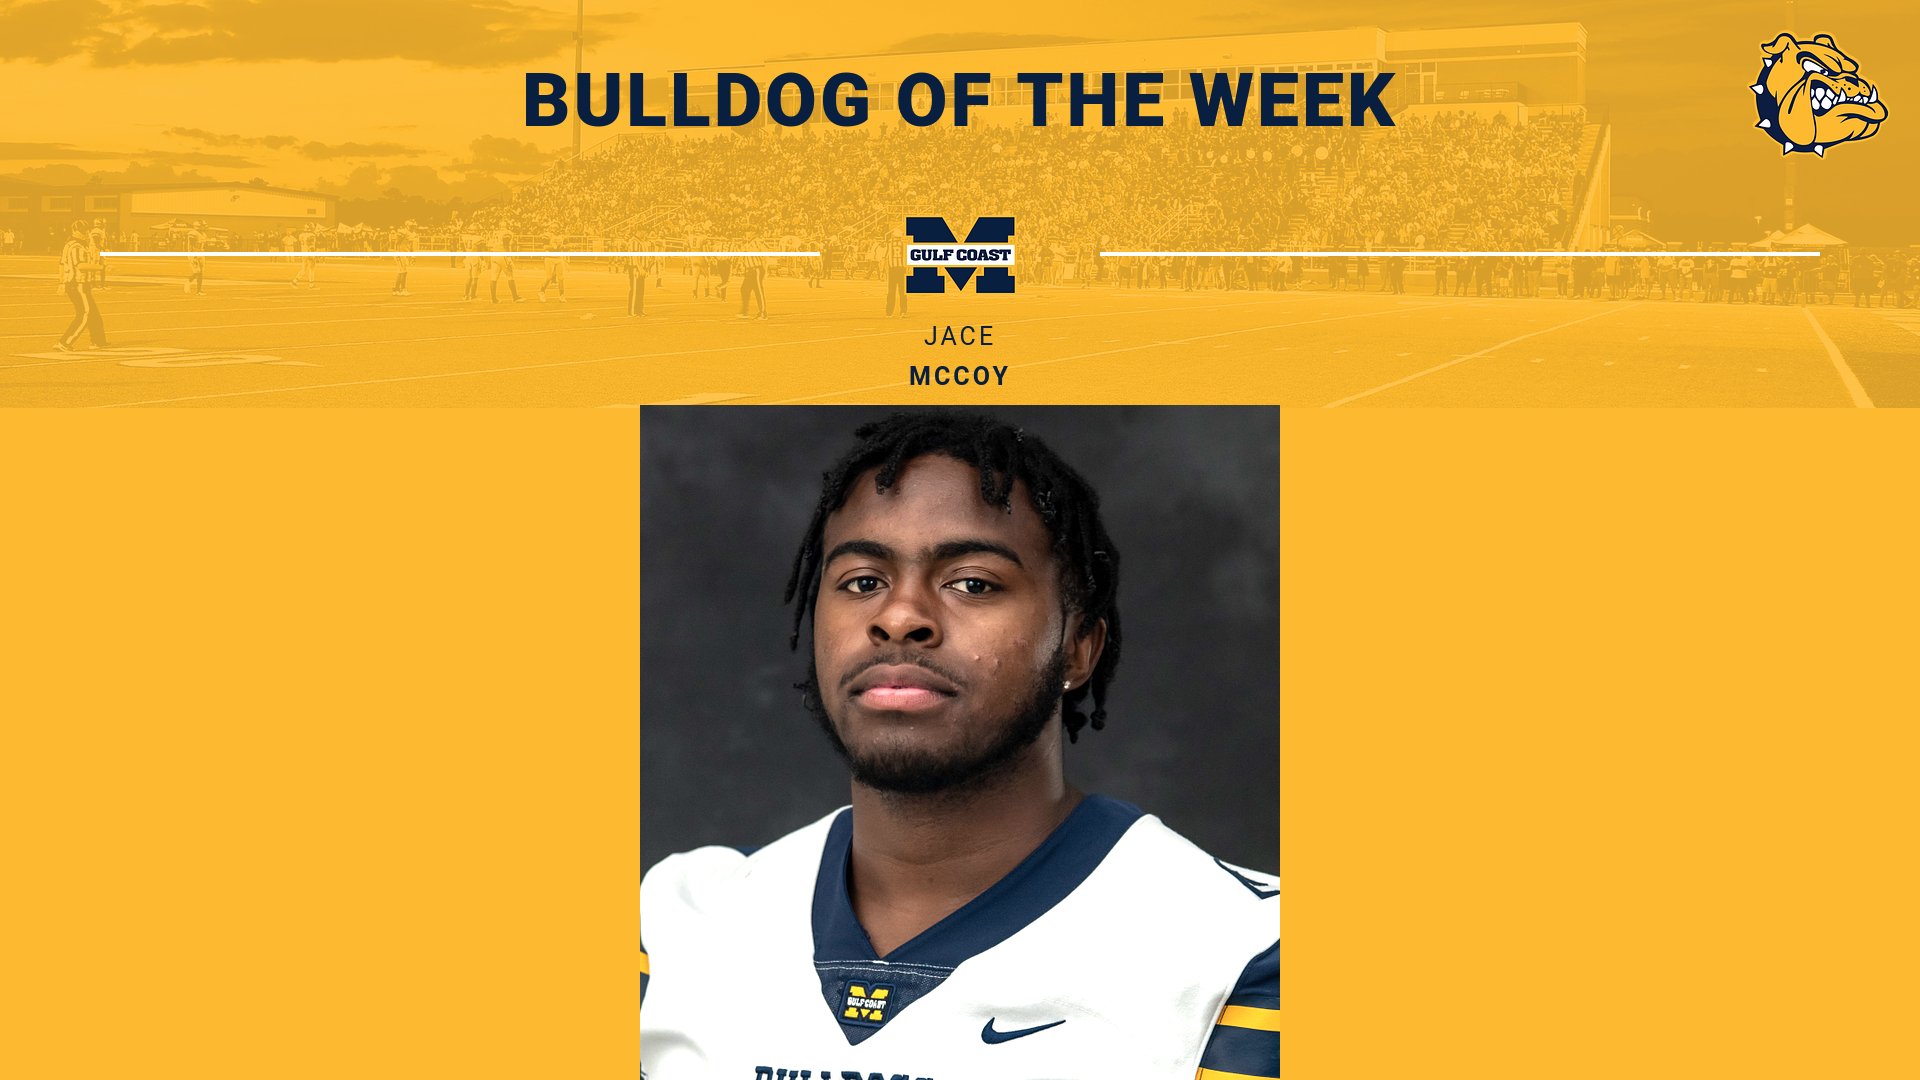 McCoy named Bulldog of the Week